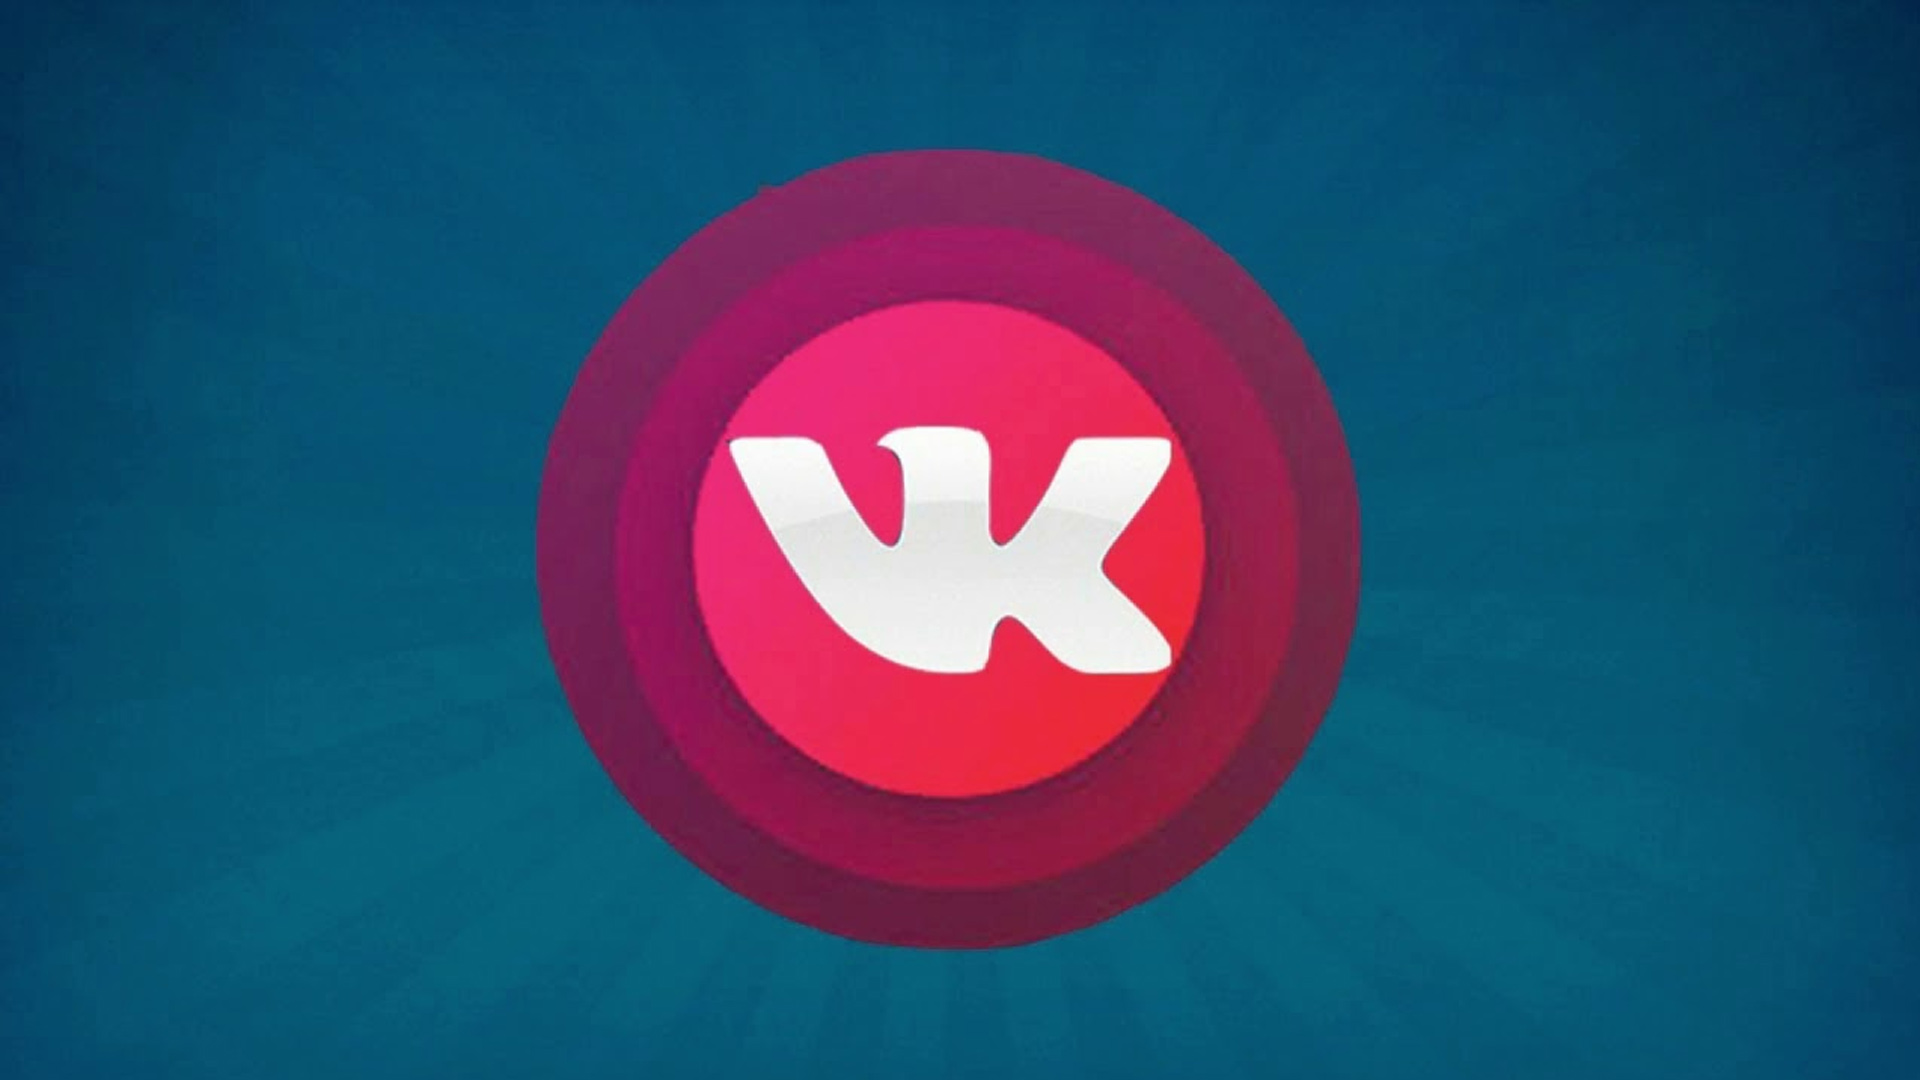 Vk live streaming. Прямой эфир ВК. Прямая трансляция ВК. Значок ВК лайв. Прямой эфир ВК логотип.